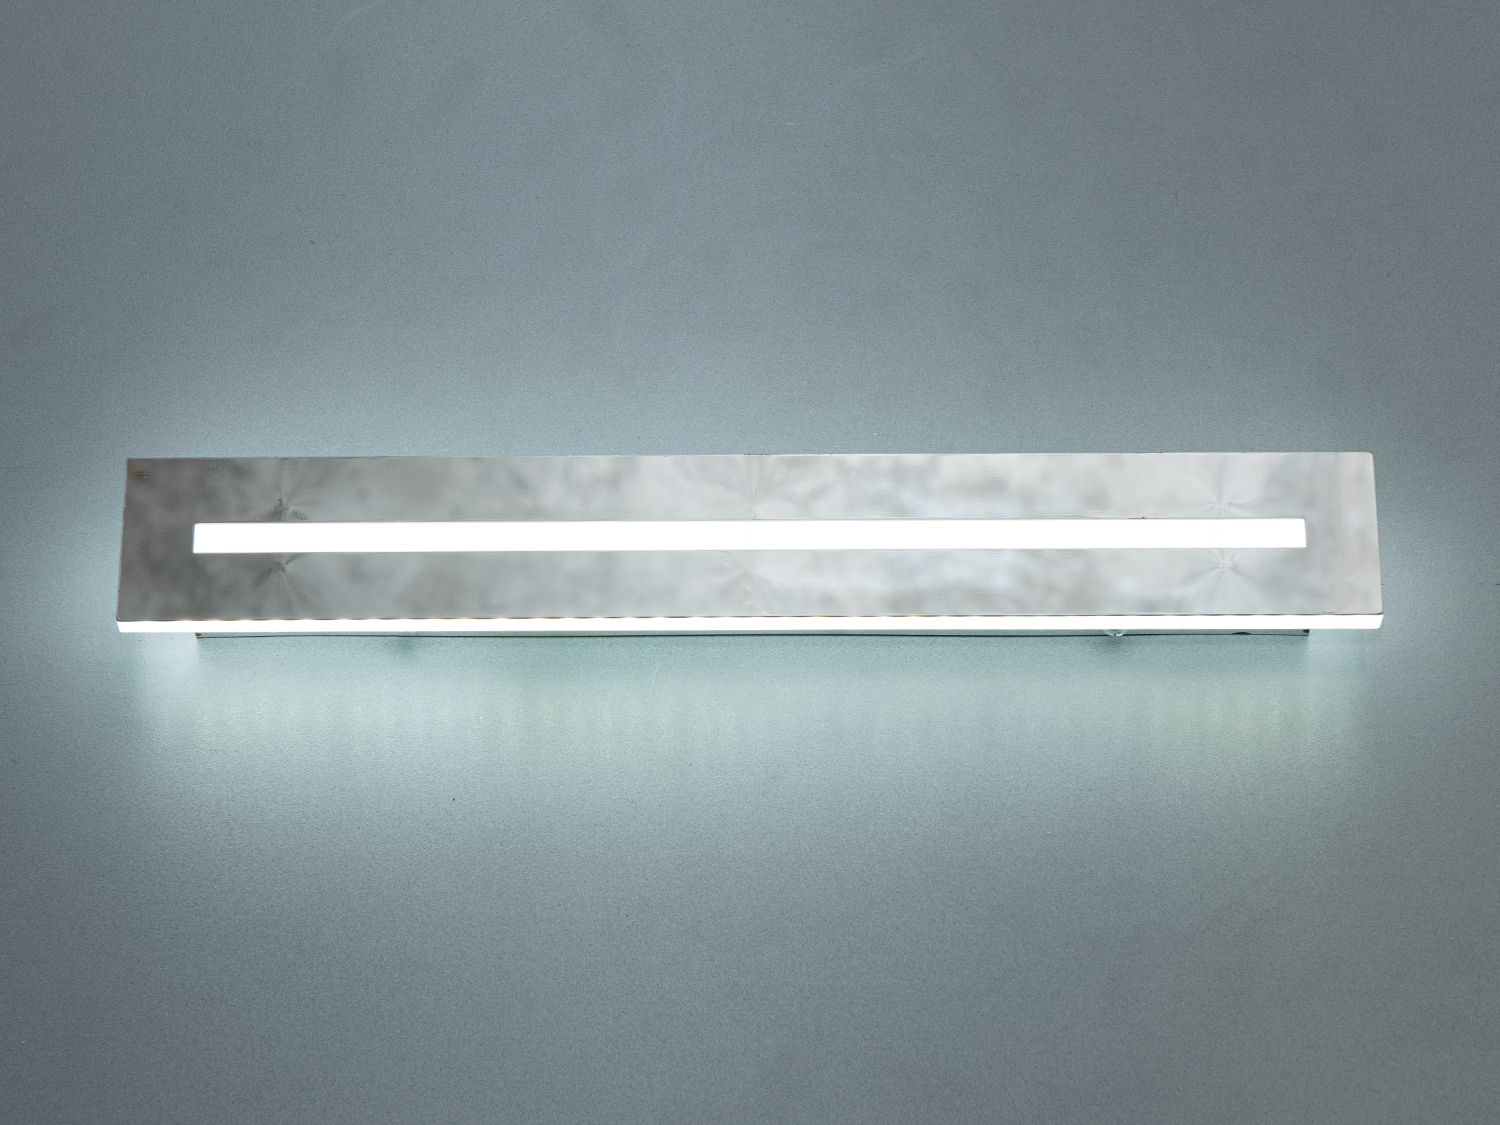 Сучасний світлодіодний світильник планка на 40 ват приваблює своєю чіткою, простою формою та ефективним освітленням. Він є втіленням унікальності у світі освітлювальних приладів, завдяки своєму стриманому дизайну та інноваційним функціям.
Лаконічність форми світильника в поєднанні з м'яким, рівномірно розсіяним світлом, яке виходить з акрилового міцного розсіювача, робить його ідеальним для використання у різноманітних інтер'єрах. Він не просто освітлює простір, але й акцентує увагу на особливих деталях інтер'єру, таких як дзеркала, картини, стінні ніші чи інші елементи декору, підкреслюючи їх красу та унікальність.
Світильник забезпечений регульованою колірною температурою через вимикач, дозволяючи користувачам вибирати оптимальний спектр освітлення для будь-якої діяльності, чи то робота в кабінеті, чи релакс у вітальні. Ця функція надає додаткову гнучкість і забезпечує можливість створення потрібної атмосфери у просторі.
Довговічність світлодіодів цього світильника забезпечує тривале та безперебійне використання, мінімізуючи необхідність у частій заміні ламп та знижуючи витрати на електроенергію. Комбінування енергоефективності, високоякісного світла та стильного дизайну робить цей світильник цінним додатком до будь-якого сучасного дому чи офісу.
Компактні розміри та простота монтажу роблять світильник 